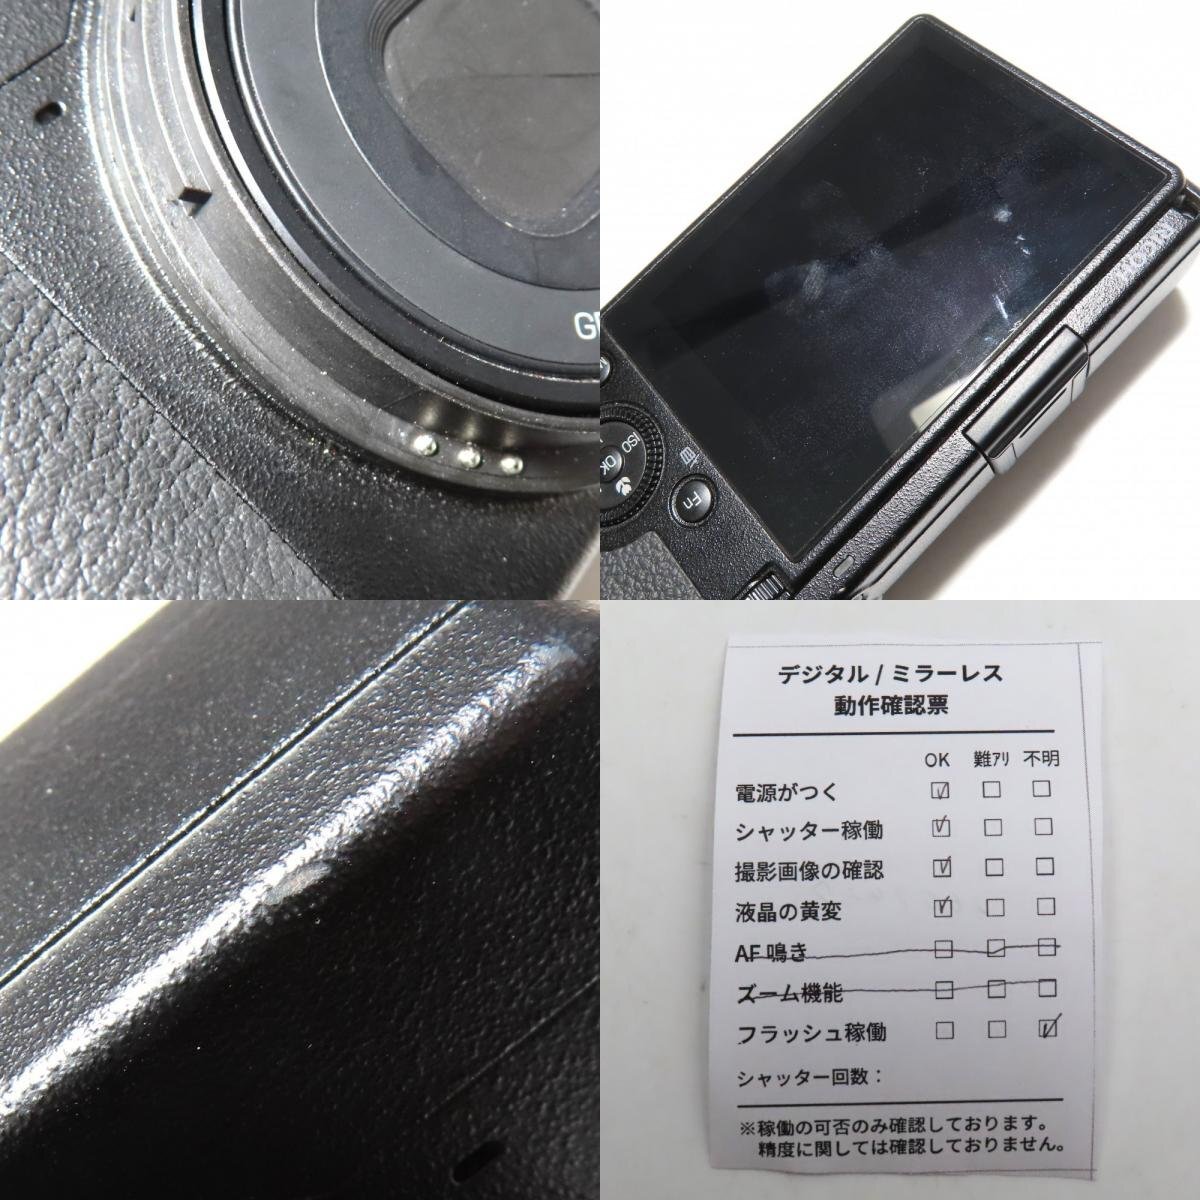 1 иен ~ RICOH Ricoh GR IIIx цифровая камера с ящиком рабочее состояние подтверждено текущее состояние товар y203-2602427[Y товар ]